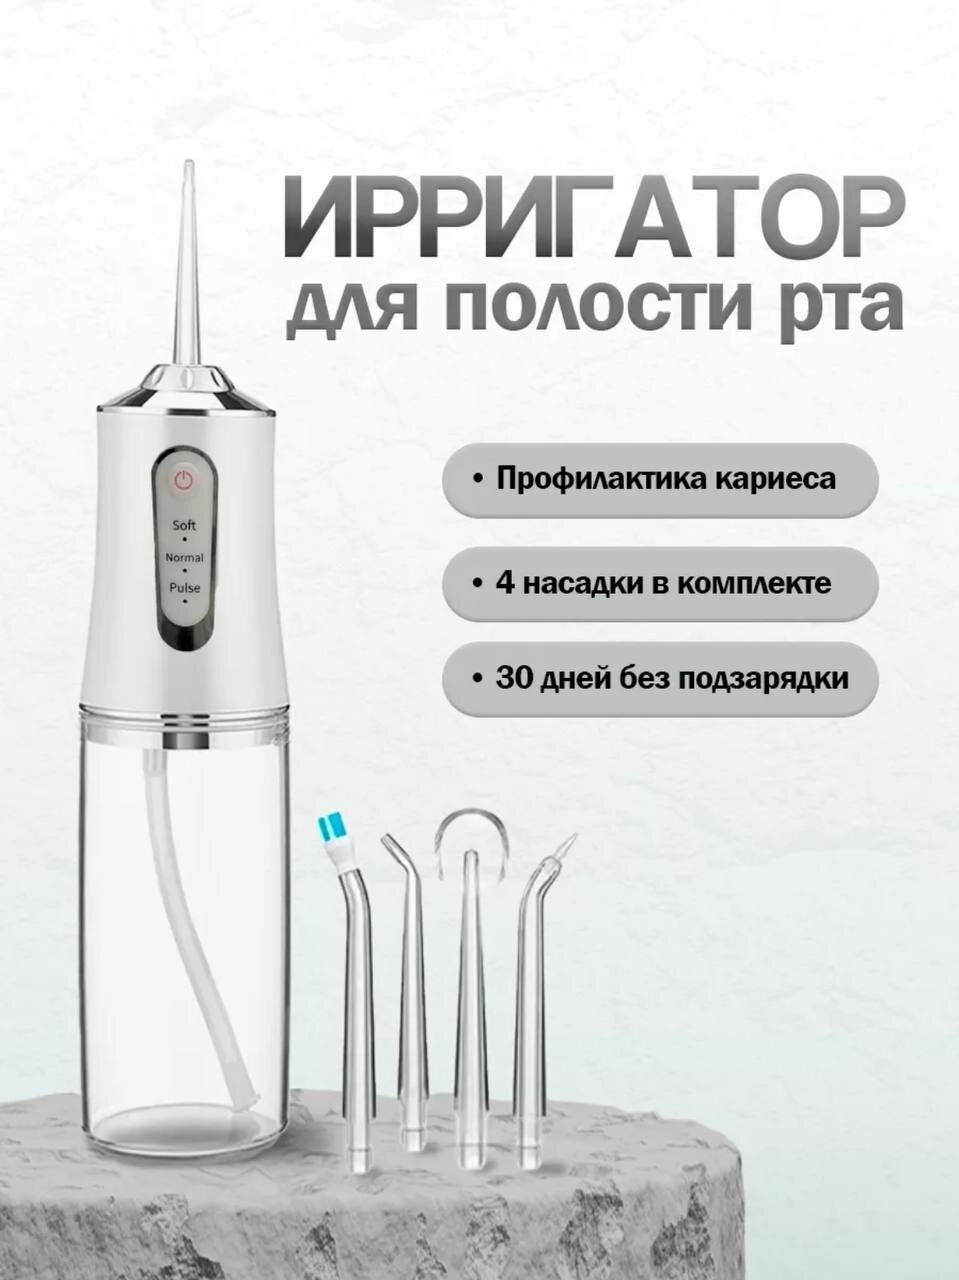 Ирригатор для полости рта портативный для отбеливания и чистки зубов от RiMax